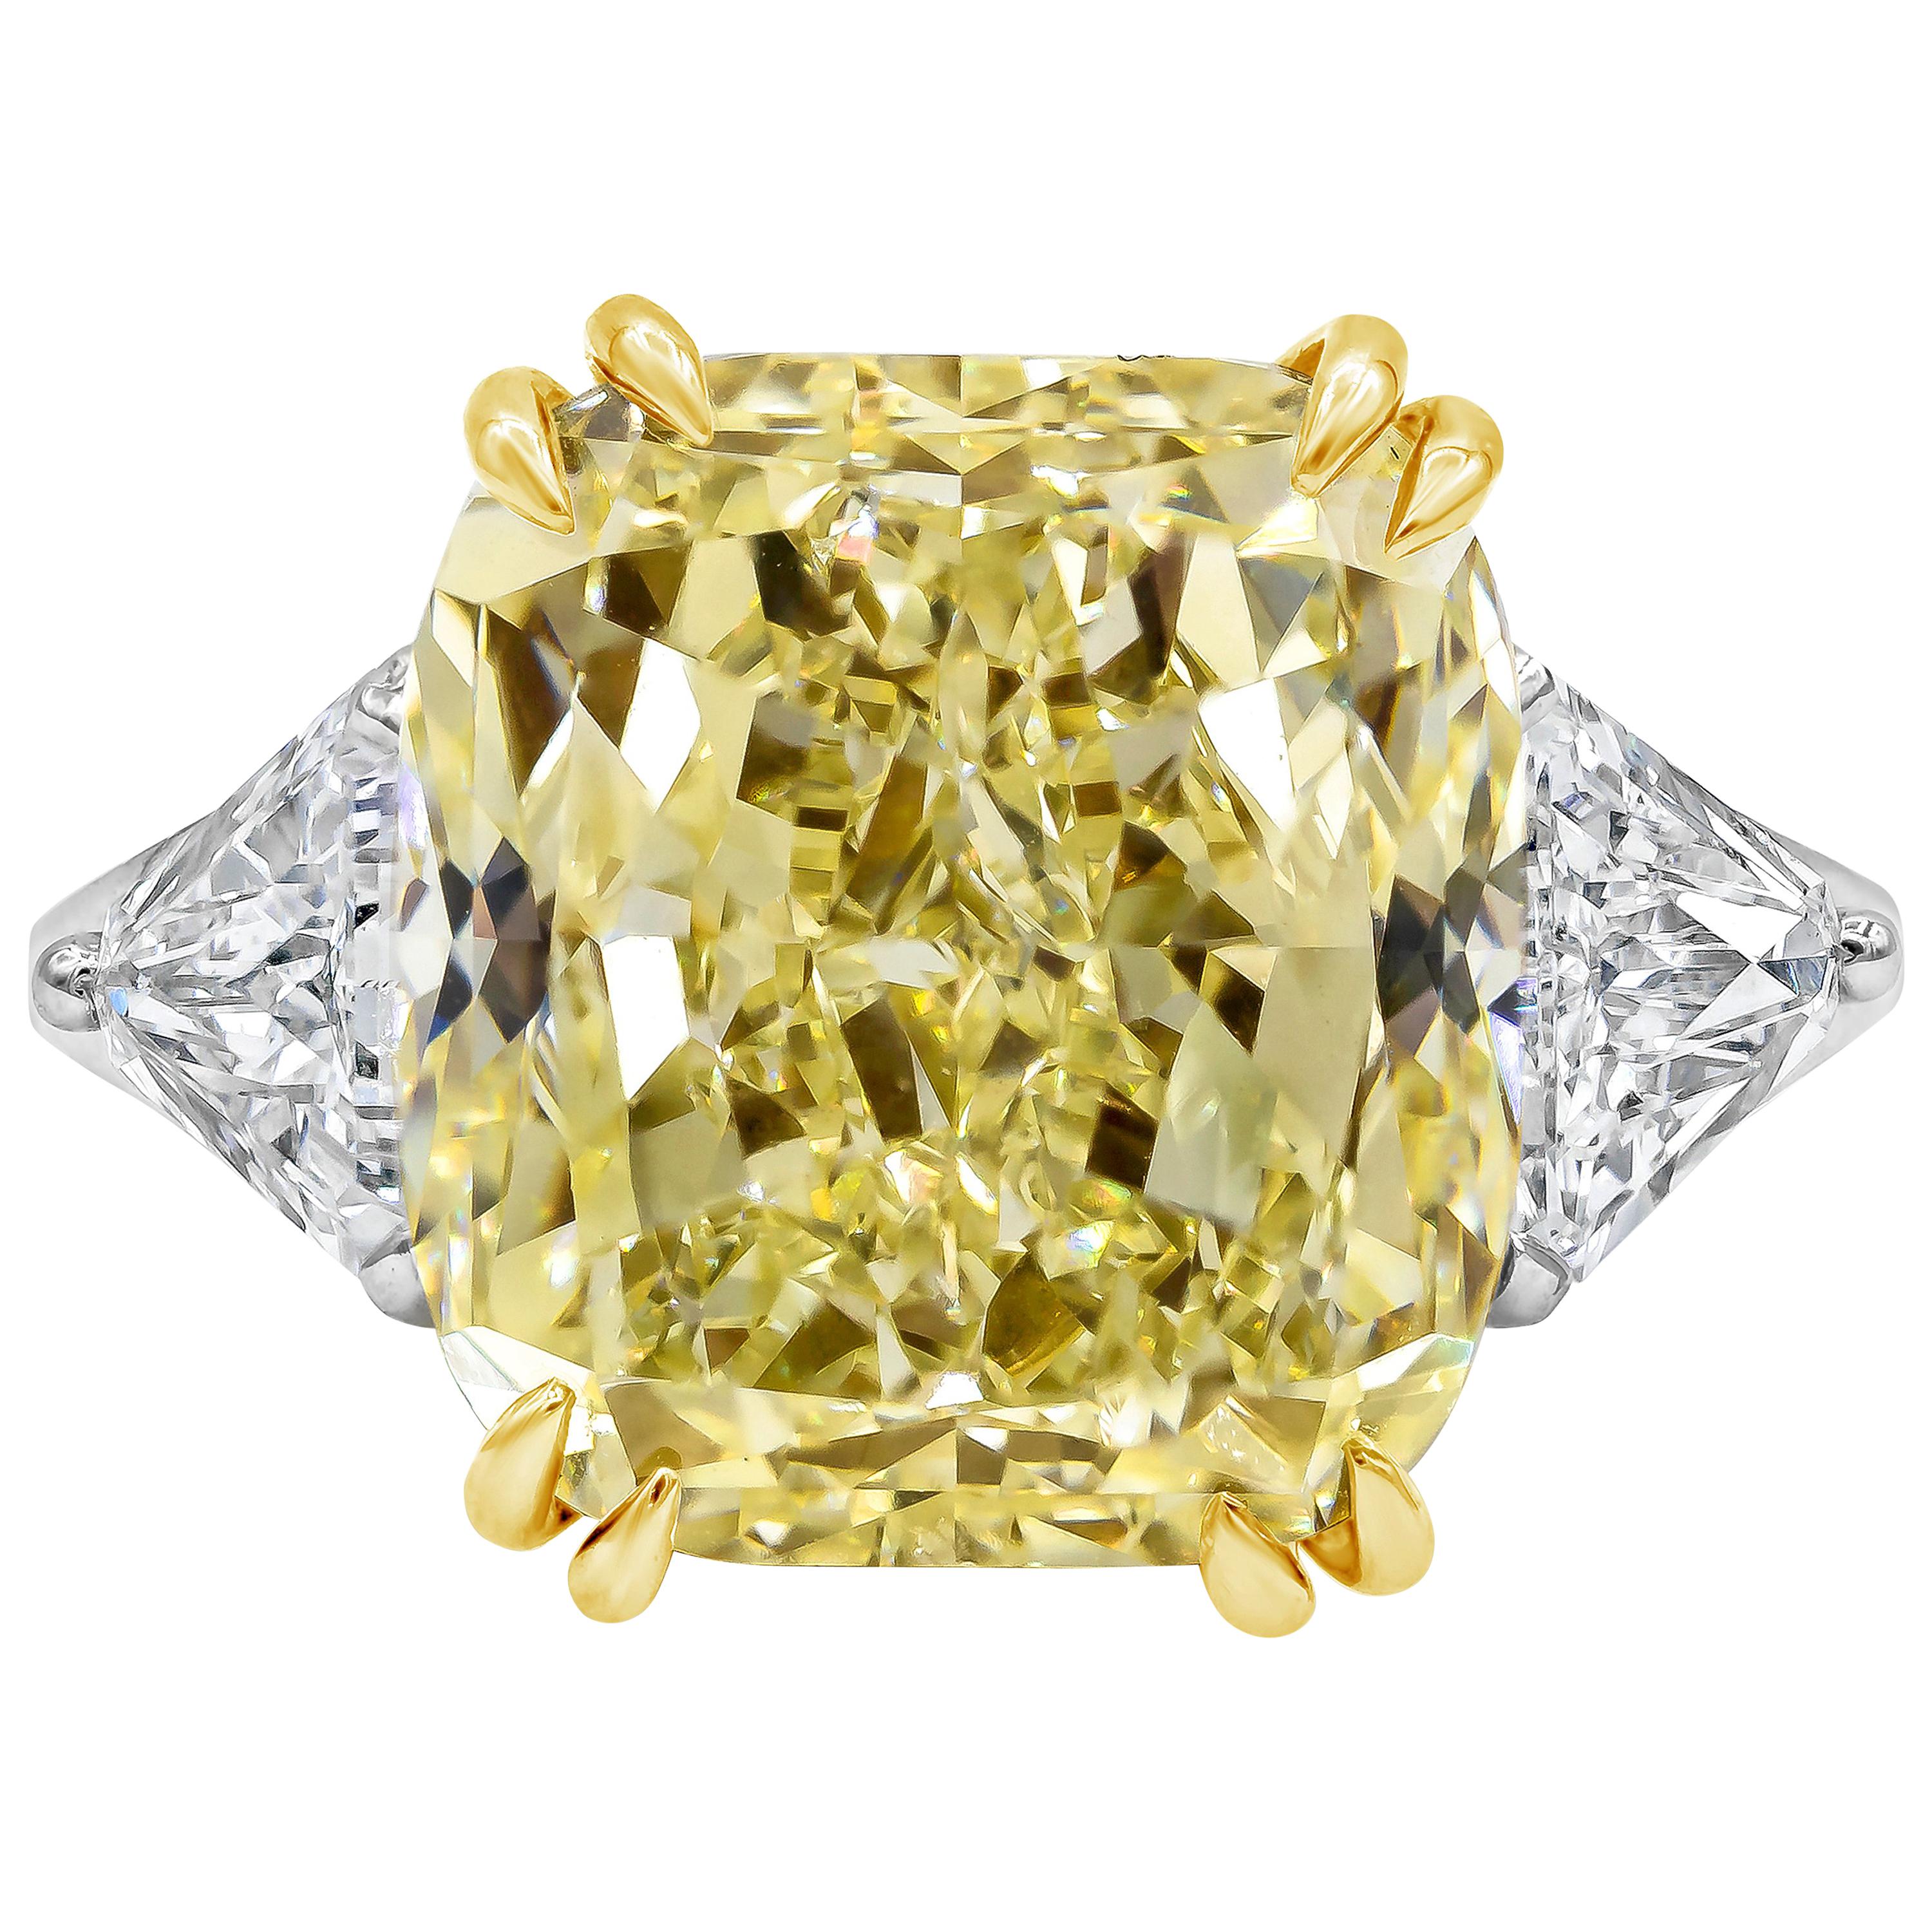 Verlobungsring mit GIA-zertifiziertem 12,15 Karat gelbem Fancy-Diamant im Kissenschliff